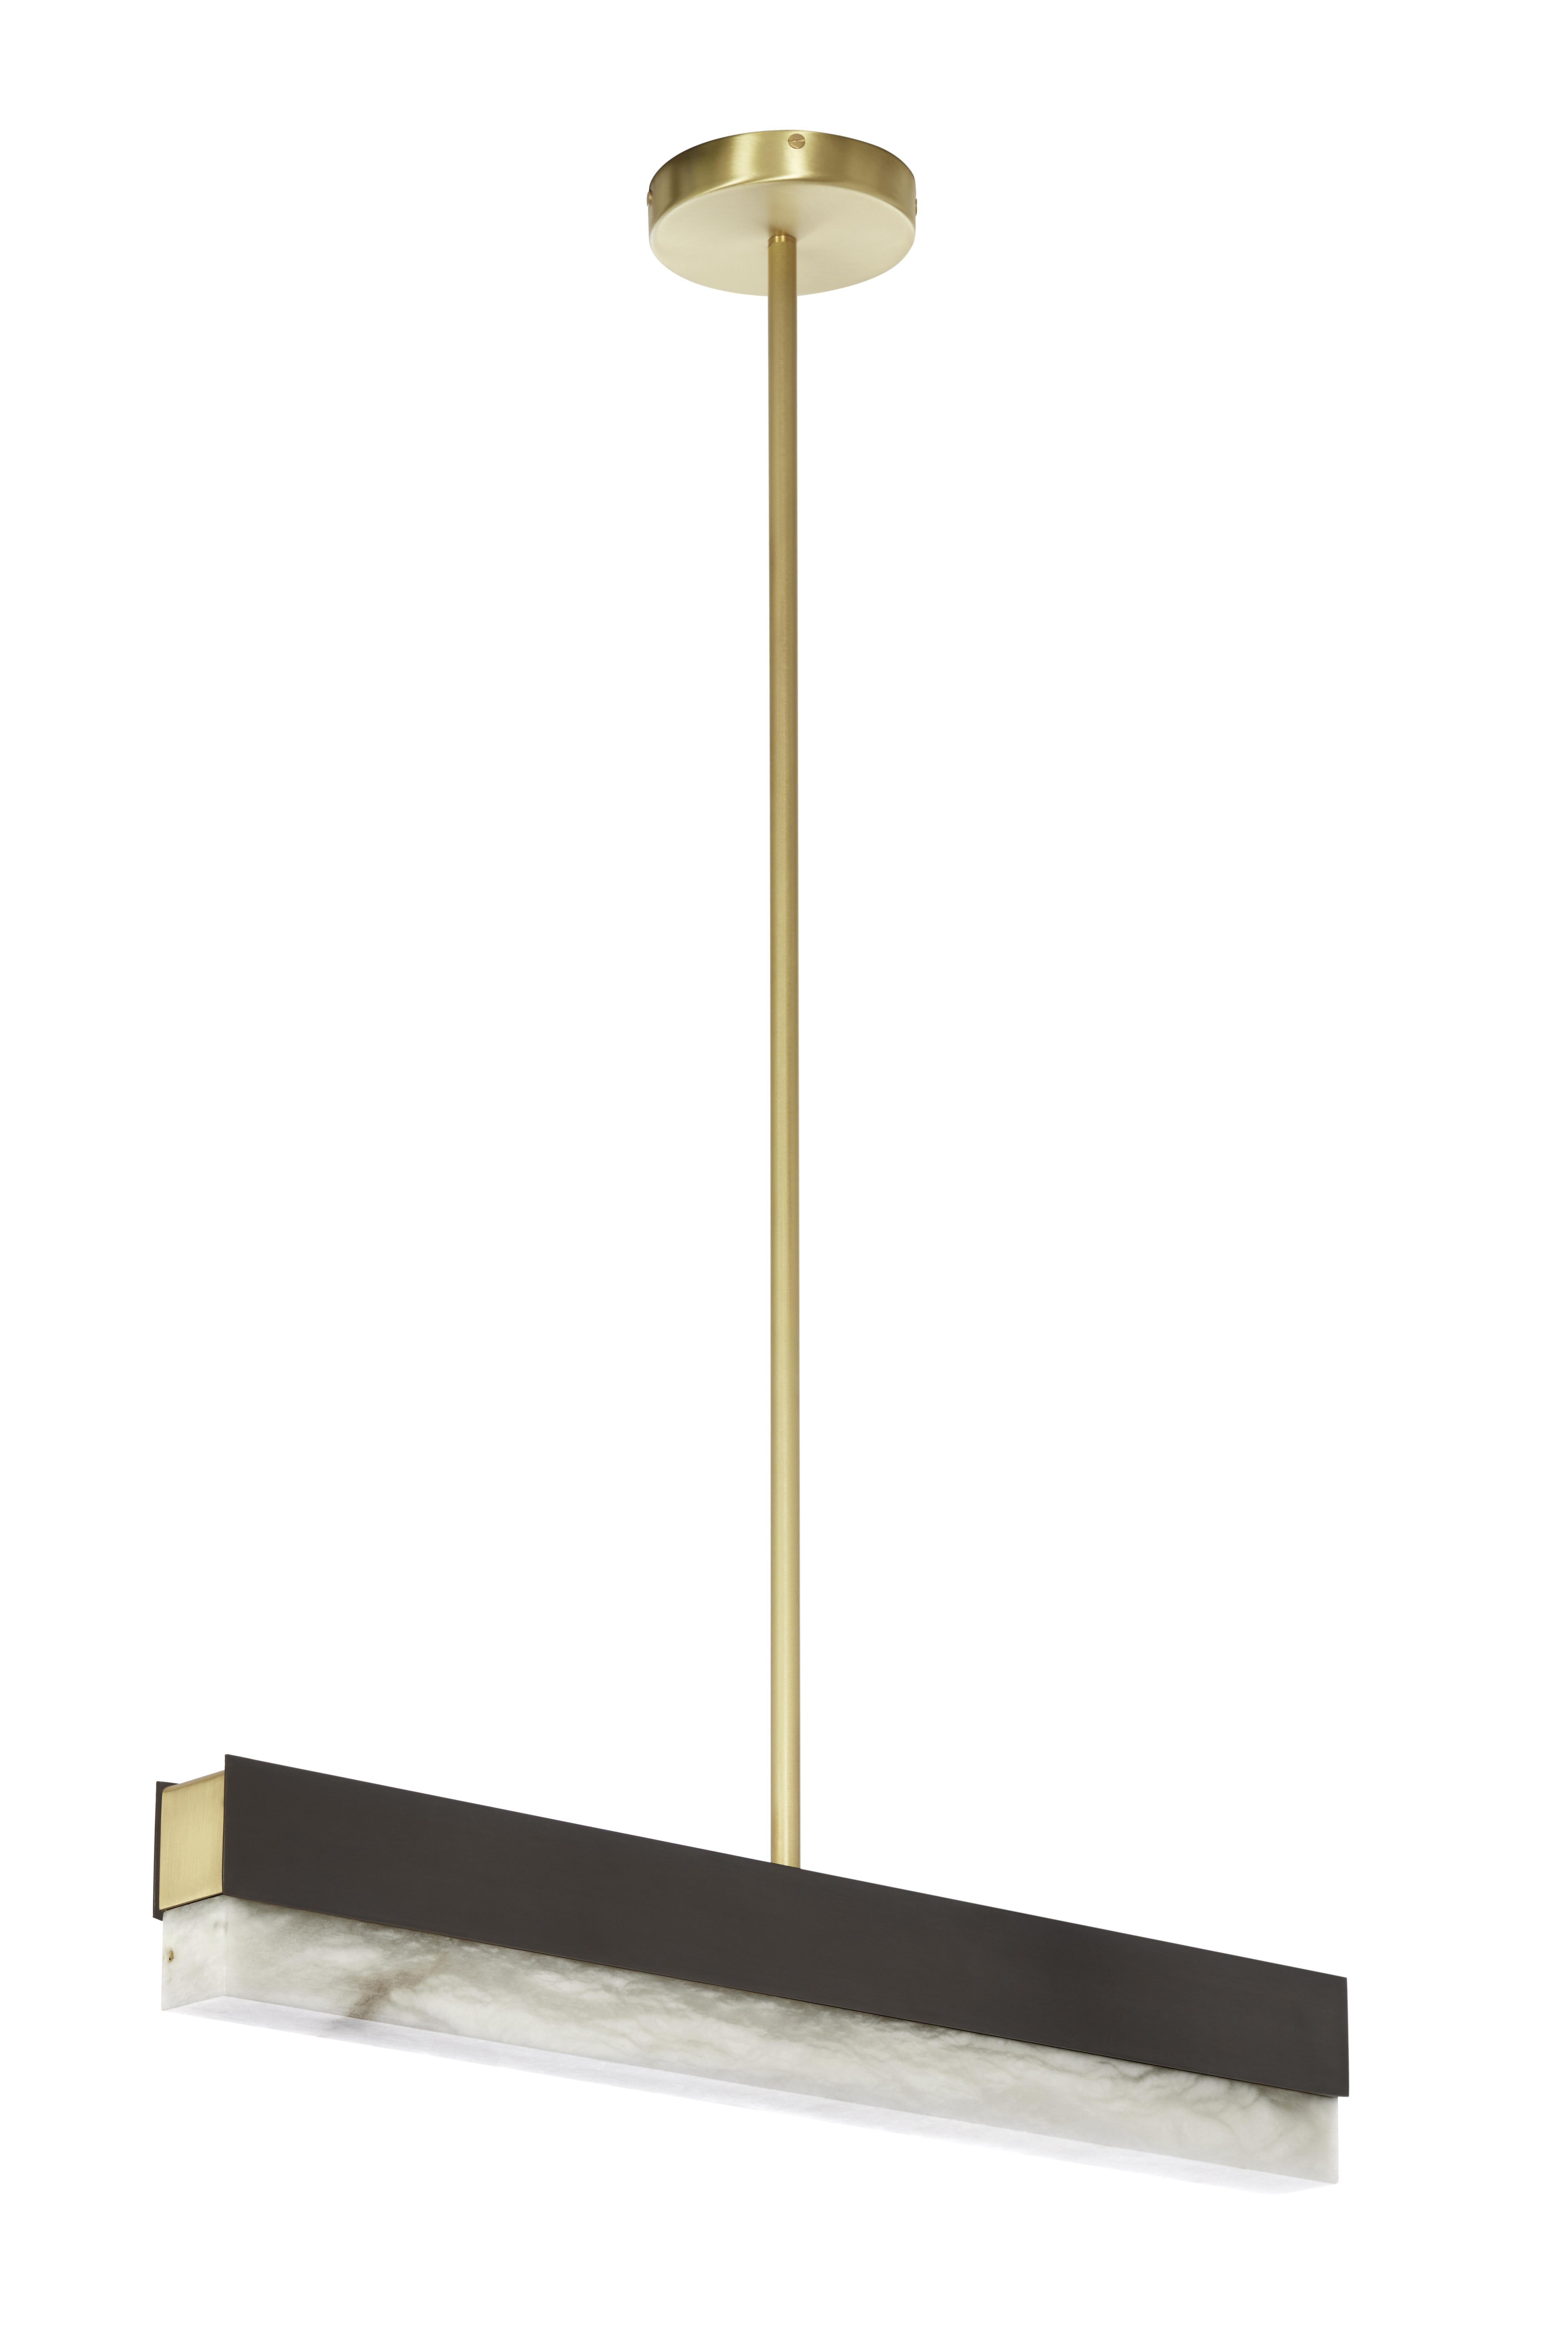 Petite lampe suspendue Artés de CTO Lighting
Matériaux : Bronze, albâtre adouci, rosace et détails en laiton satiné.
Dimensions : 61 x H min 14 cm

Toutes nos lampes peuvent être câblées en fonction de chaque pays. Si elle est vendue aux États-Unis,